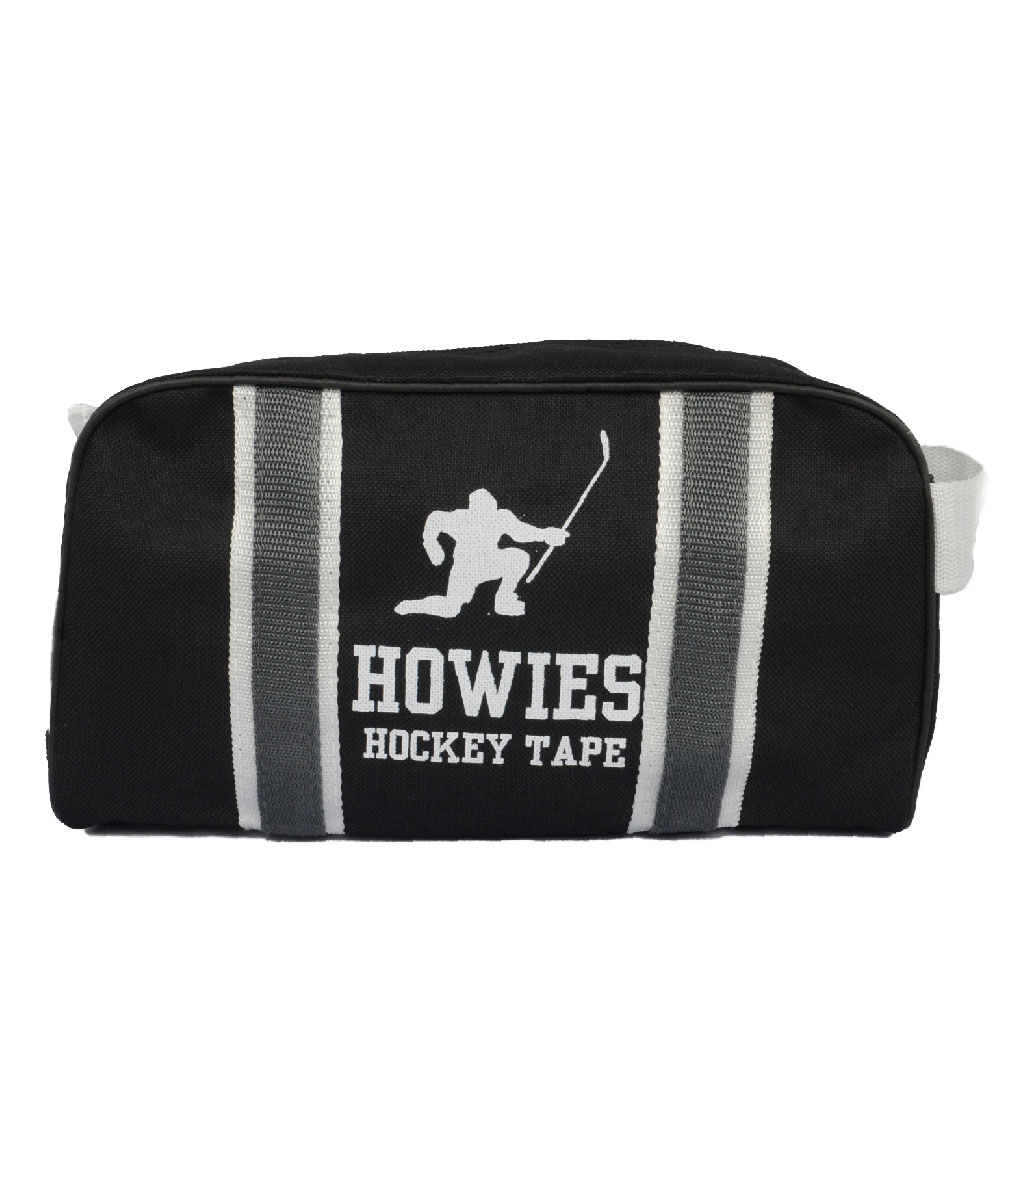 Howies Tape Bag